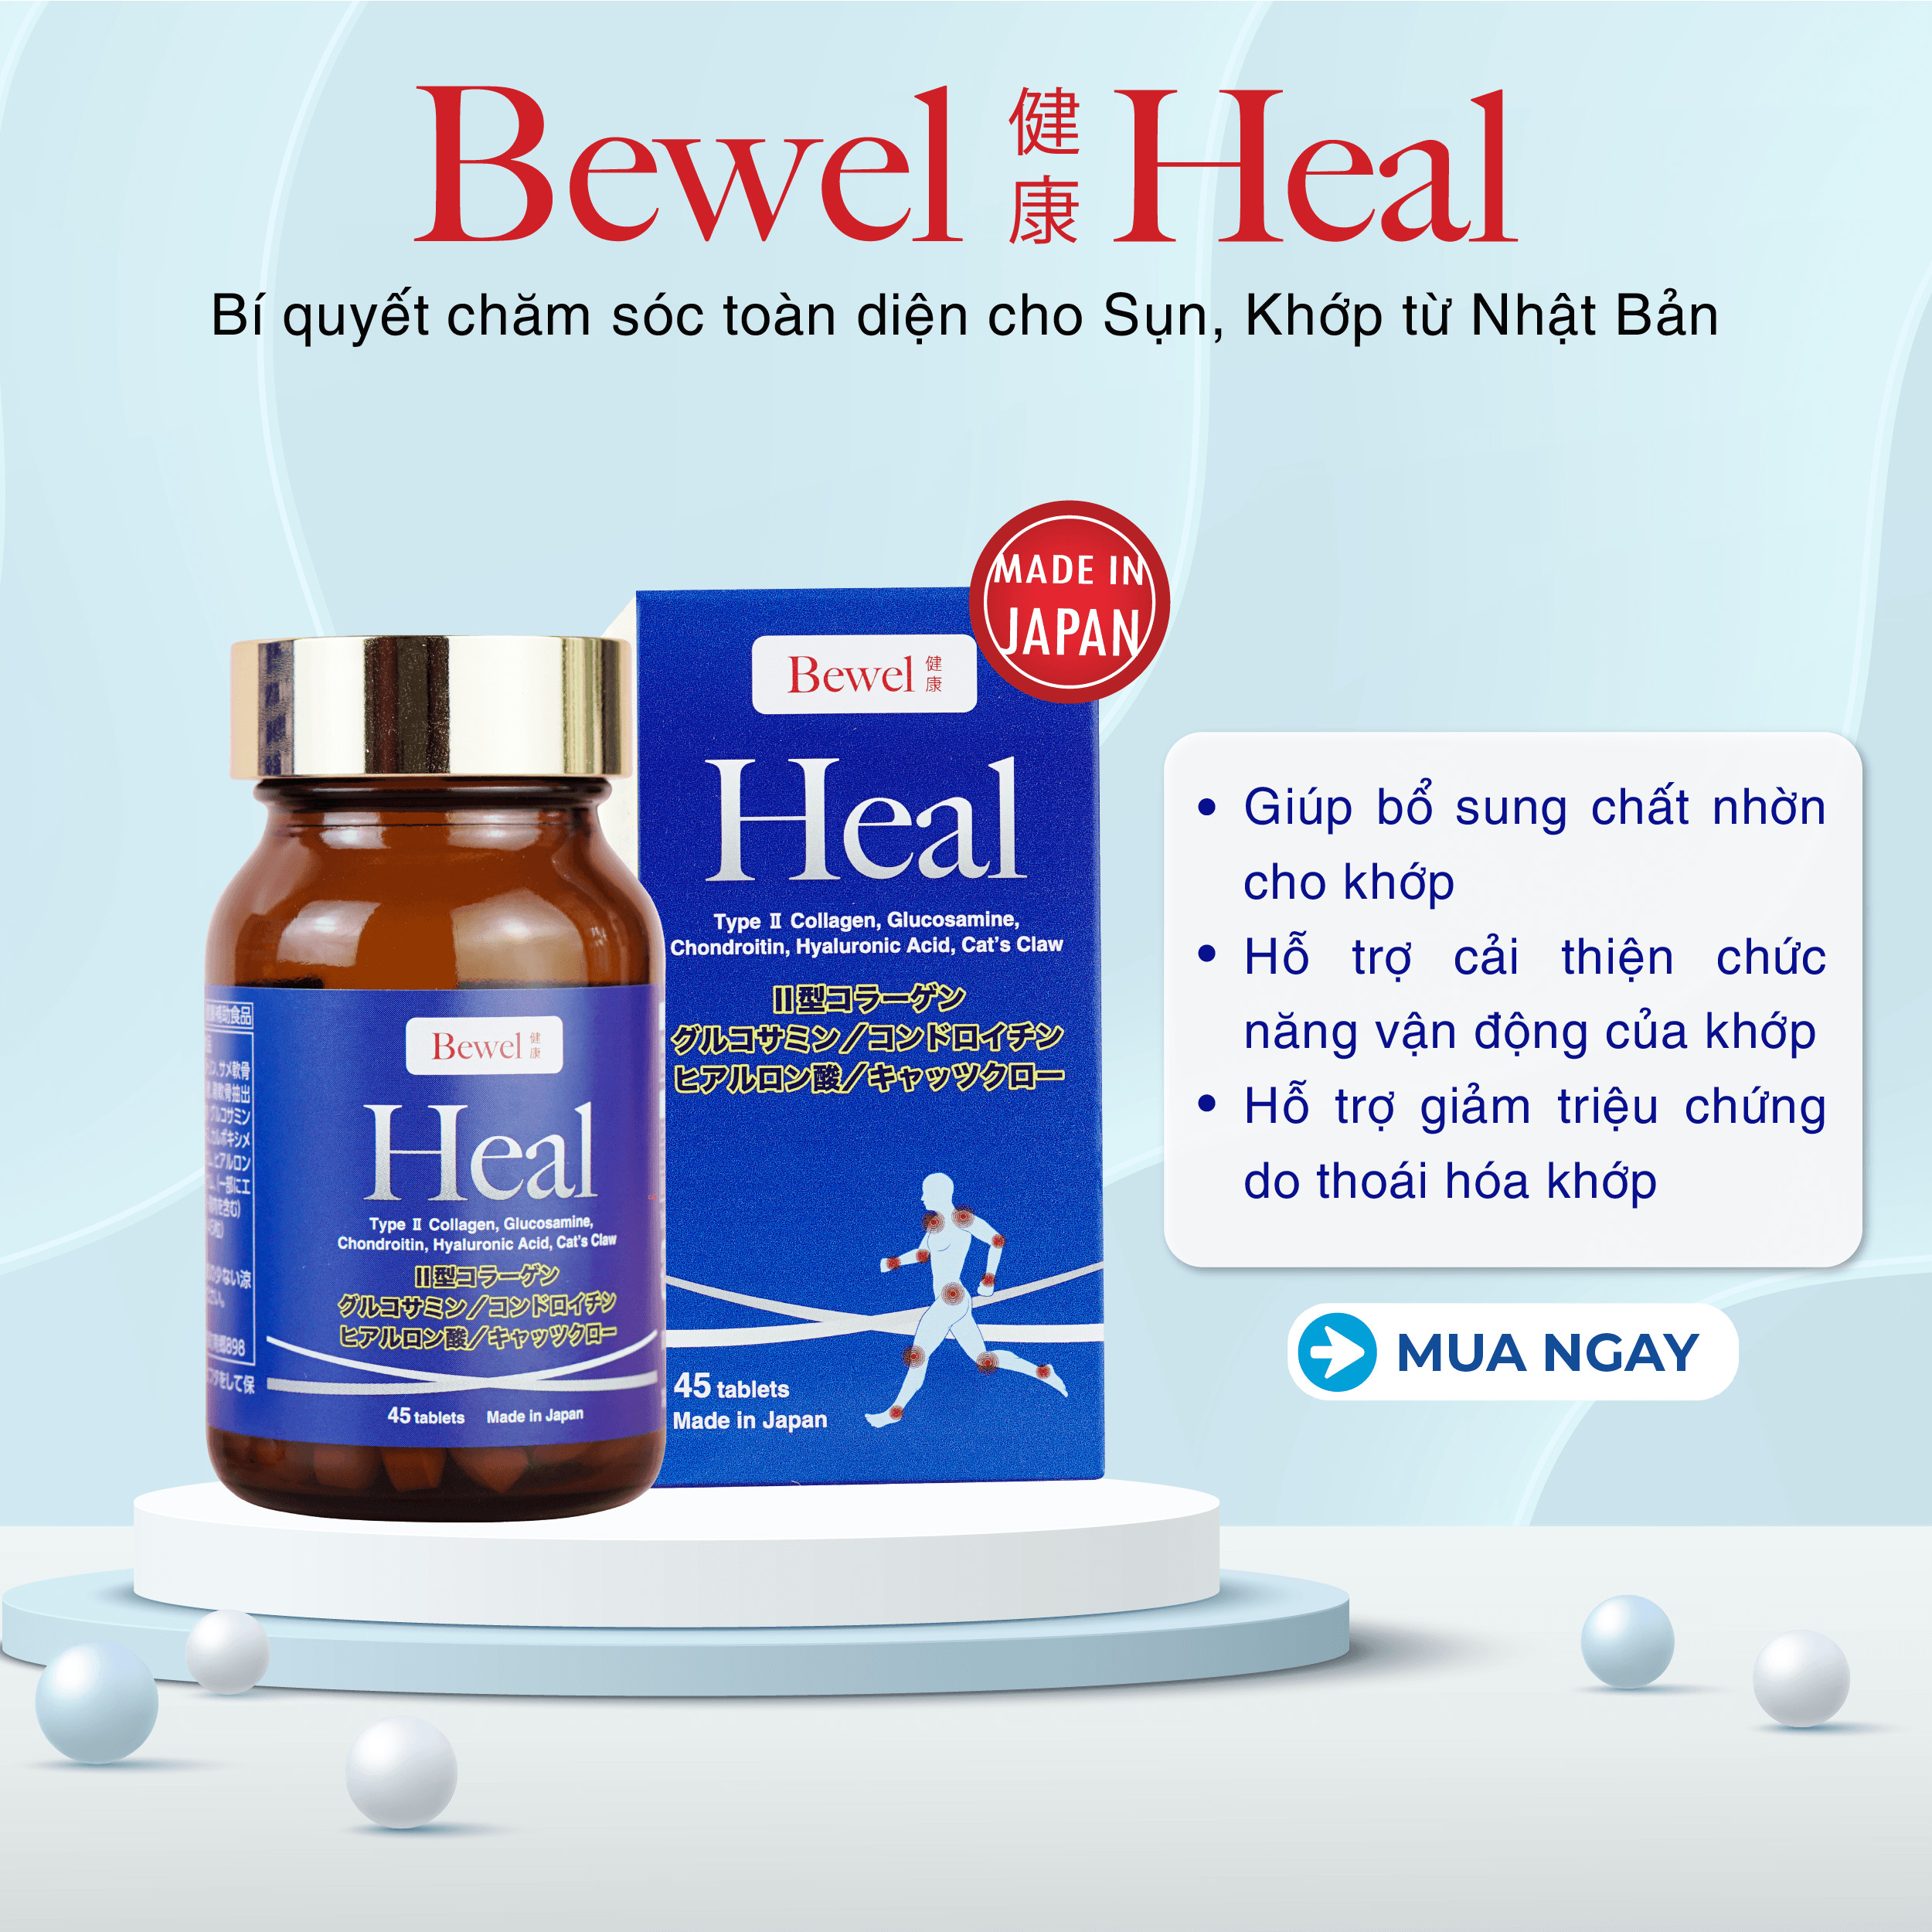 Thực phẩm chức năng chăm sóc toàn diện cho sụn khớp Bewel Heal 1